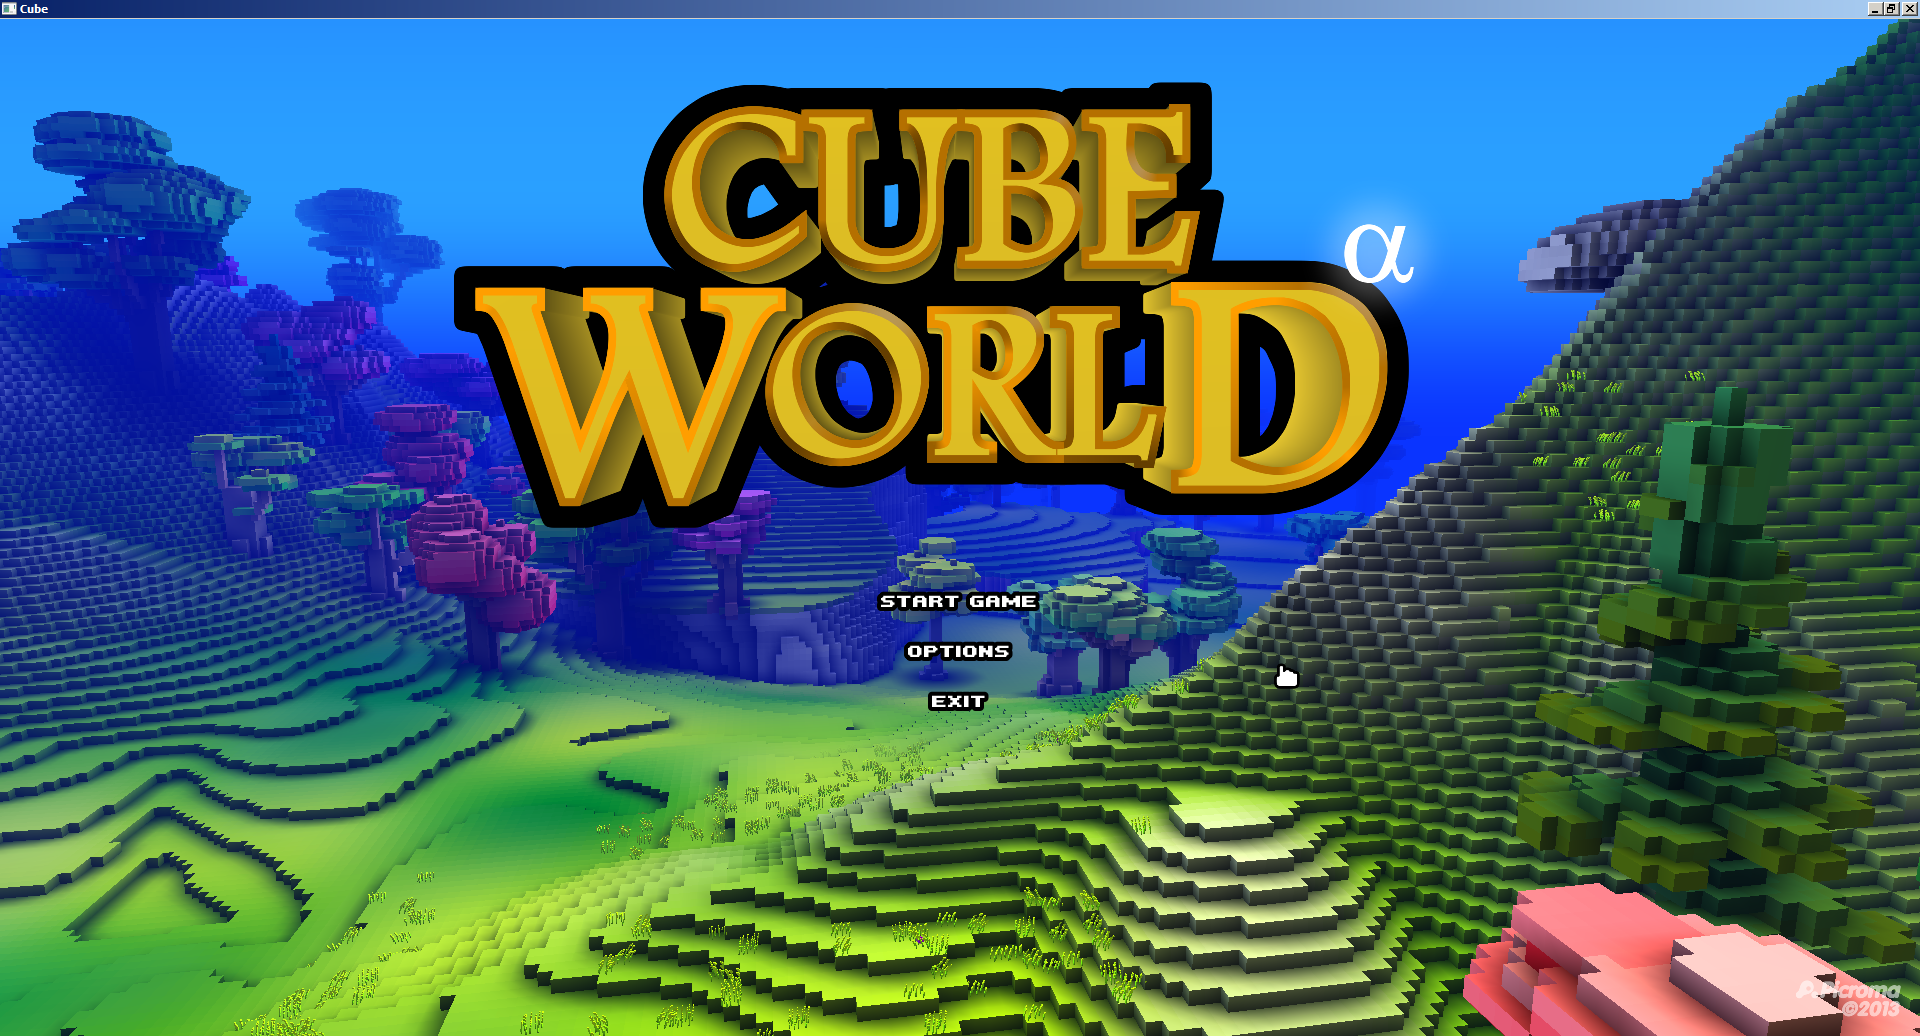 Cube World's new logo